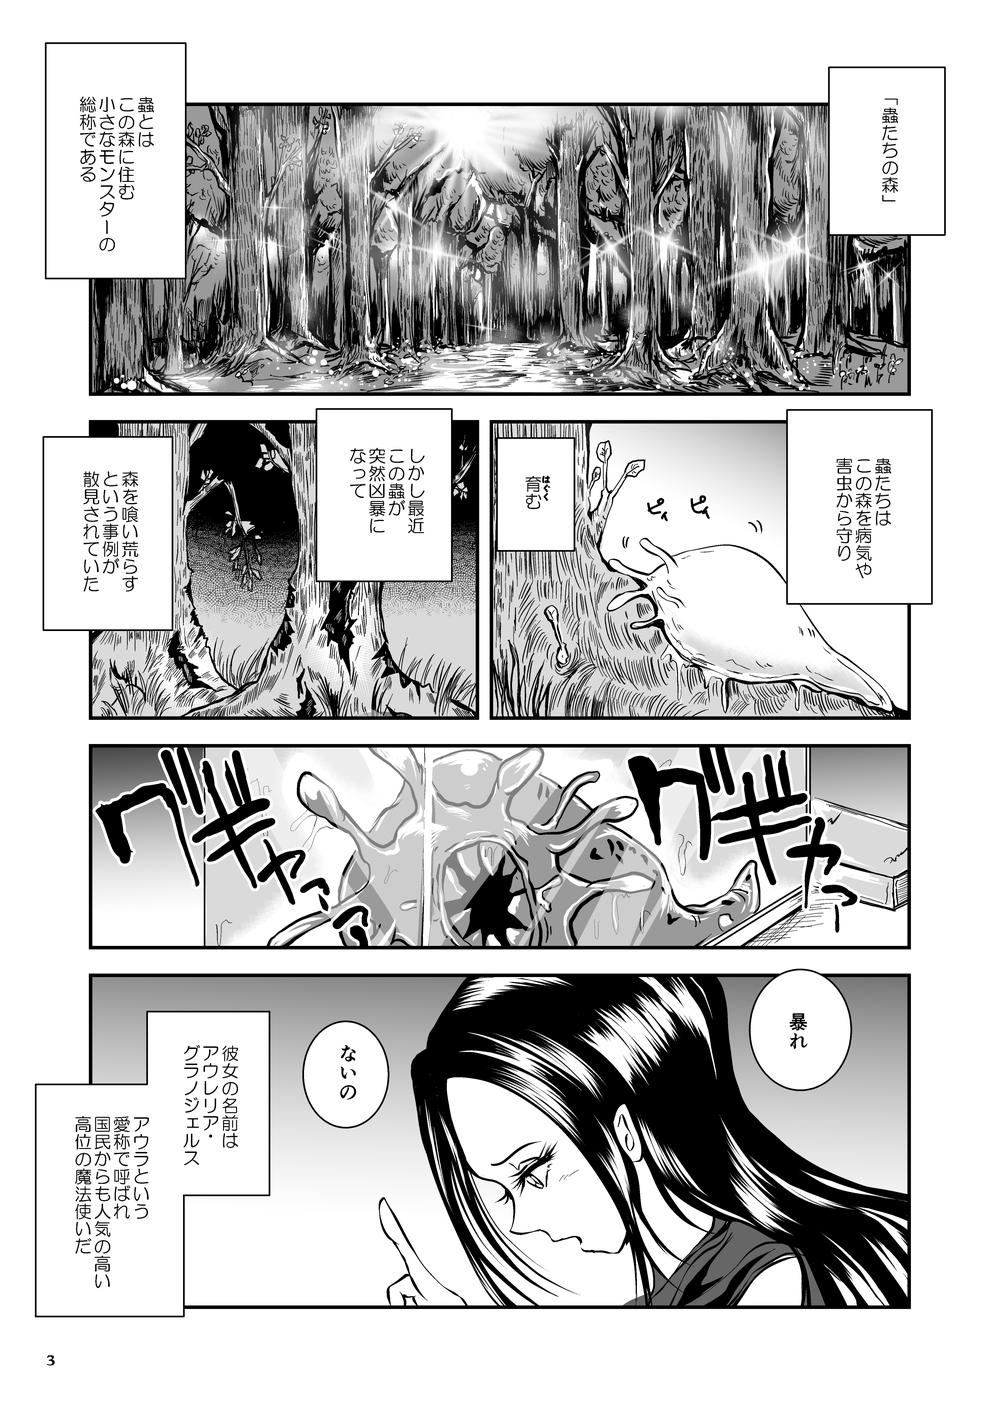 Oonamekuji to Kurokami no Mahoutsukai - Parasitized Giant Slugs V.S. Sorceress of the Black Hair as Aura 49